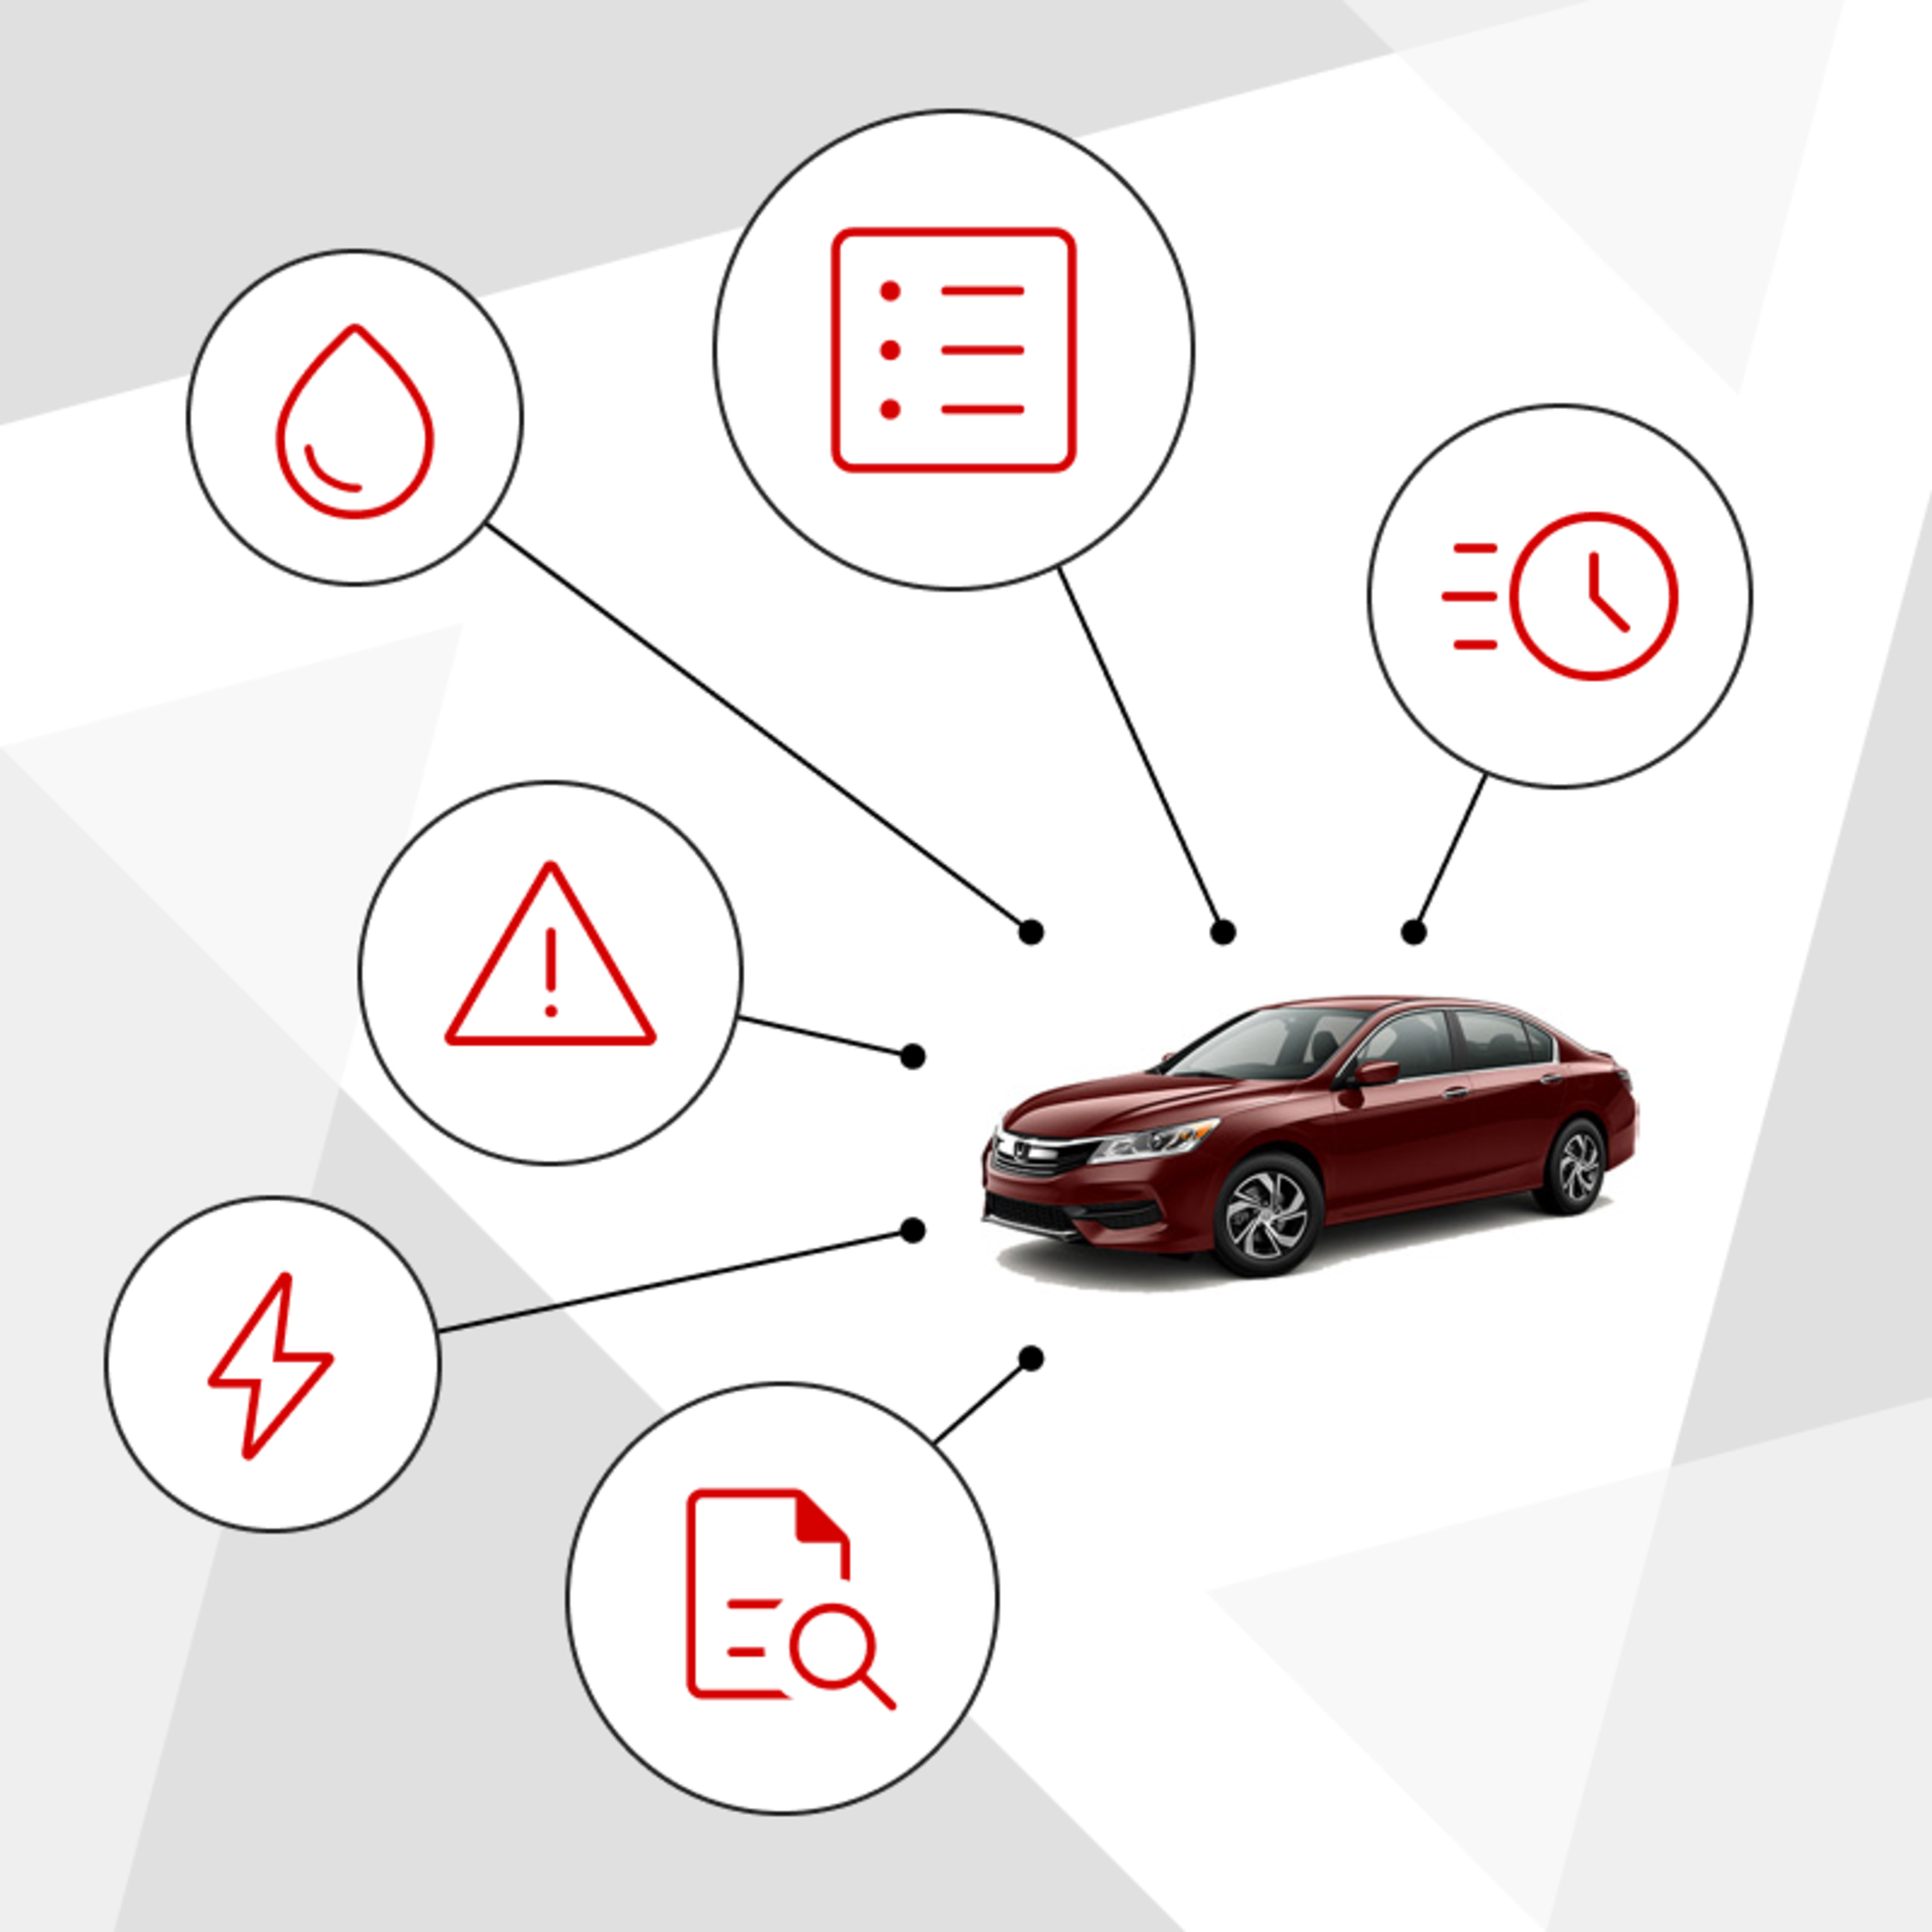 2016 Honda Accord service and repair manual hero image